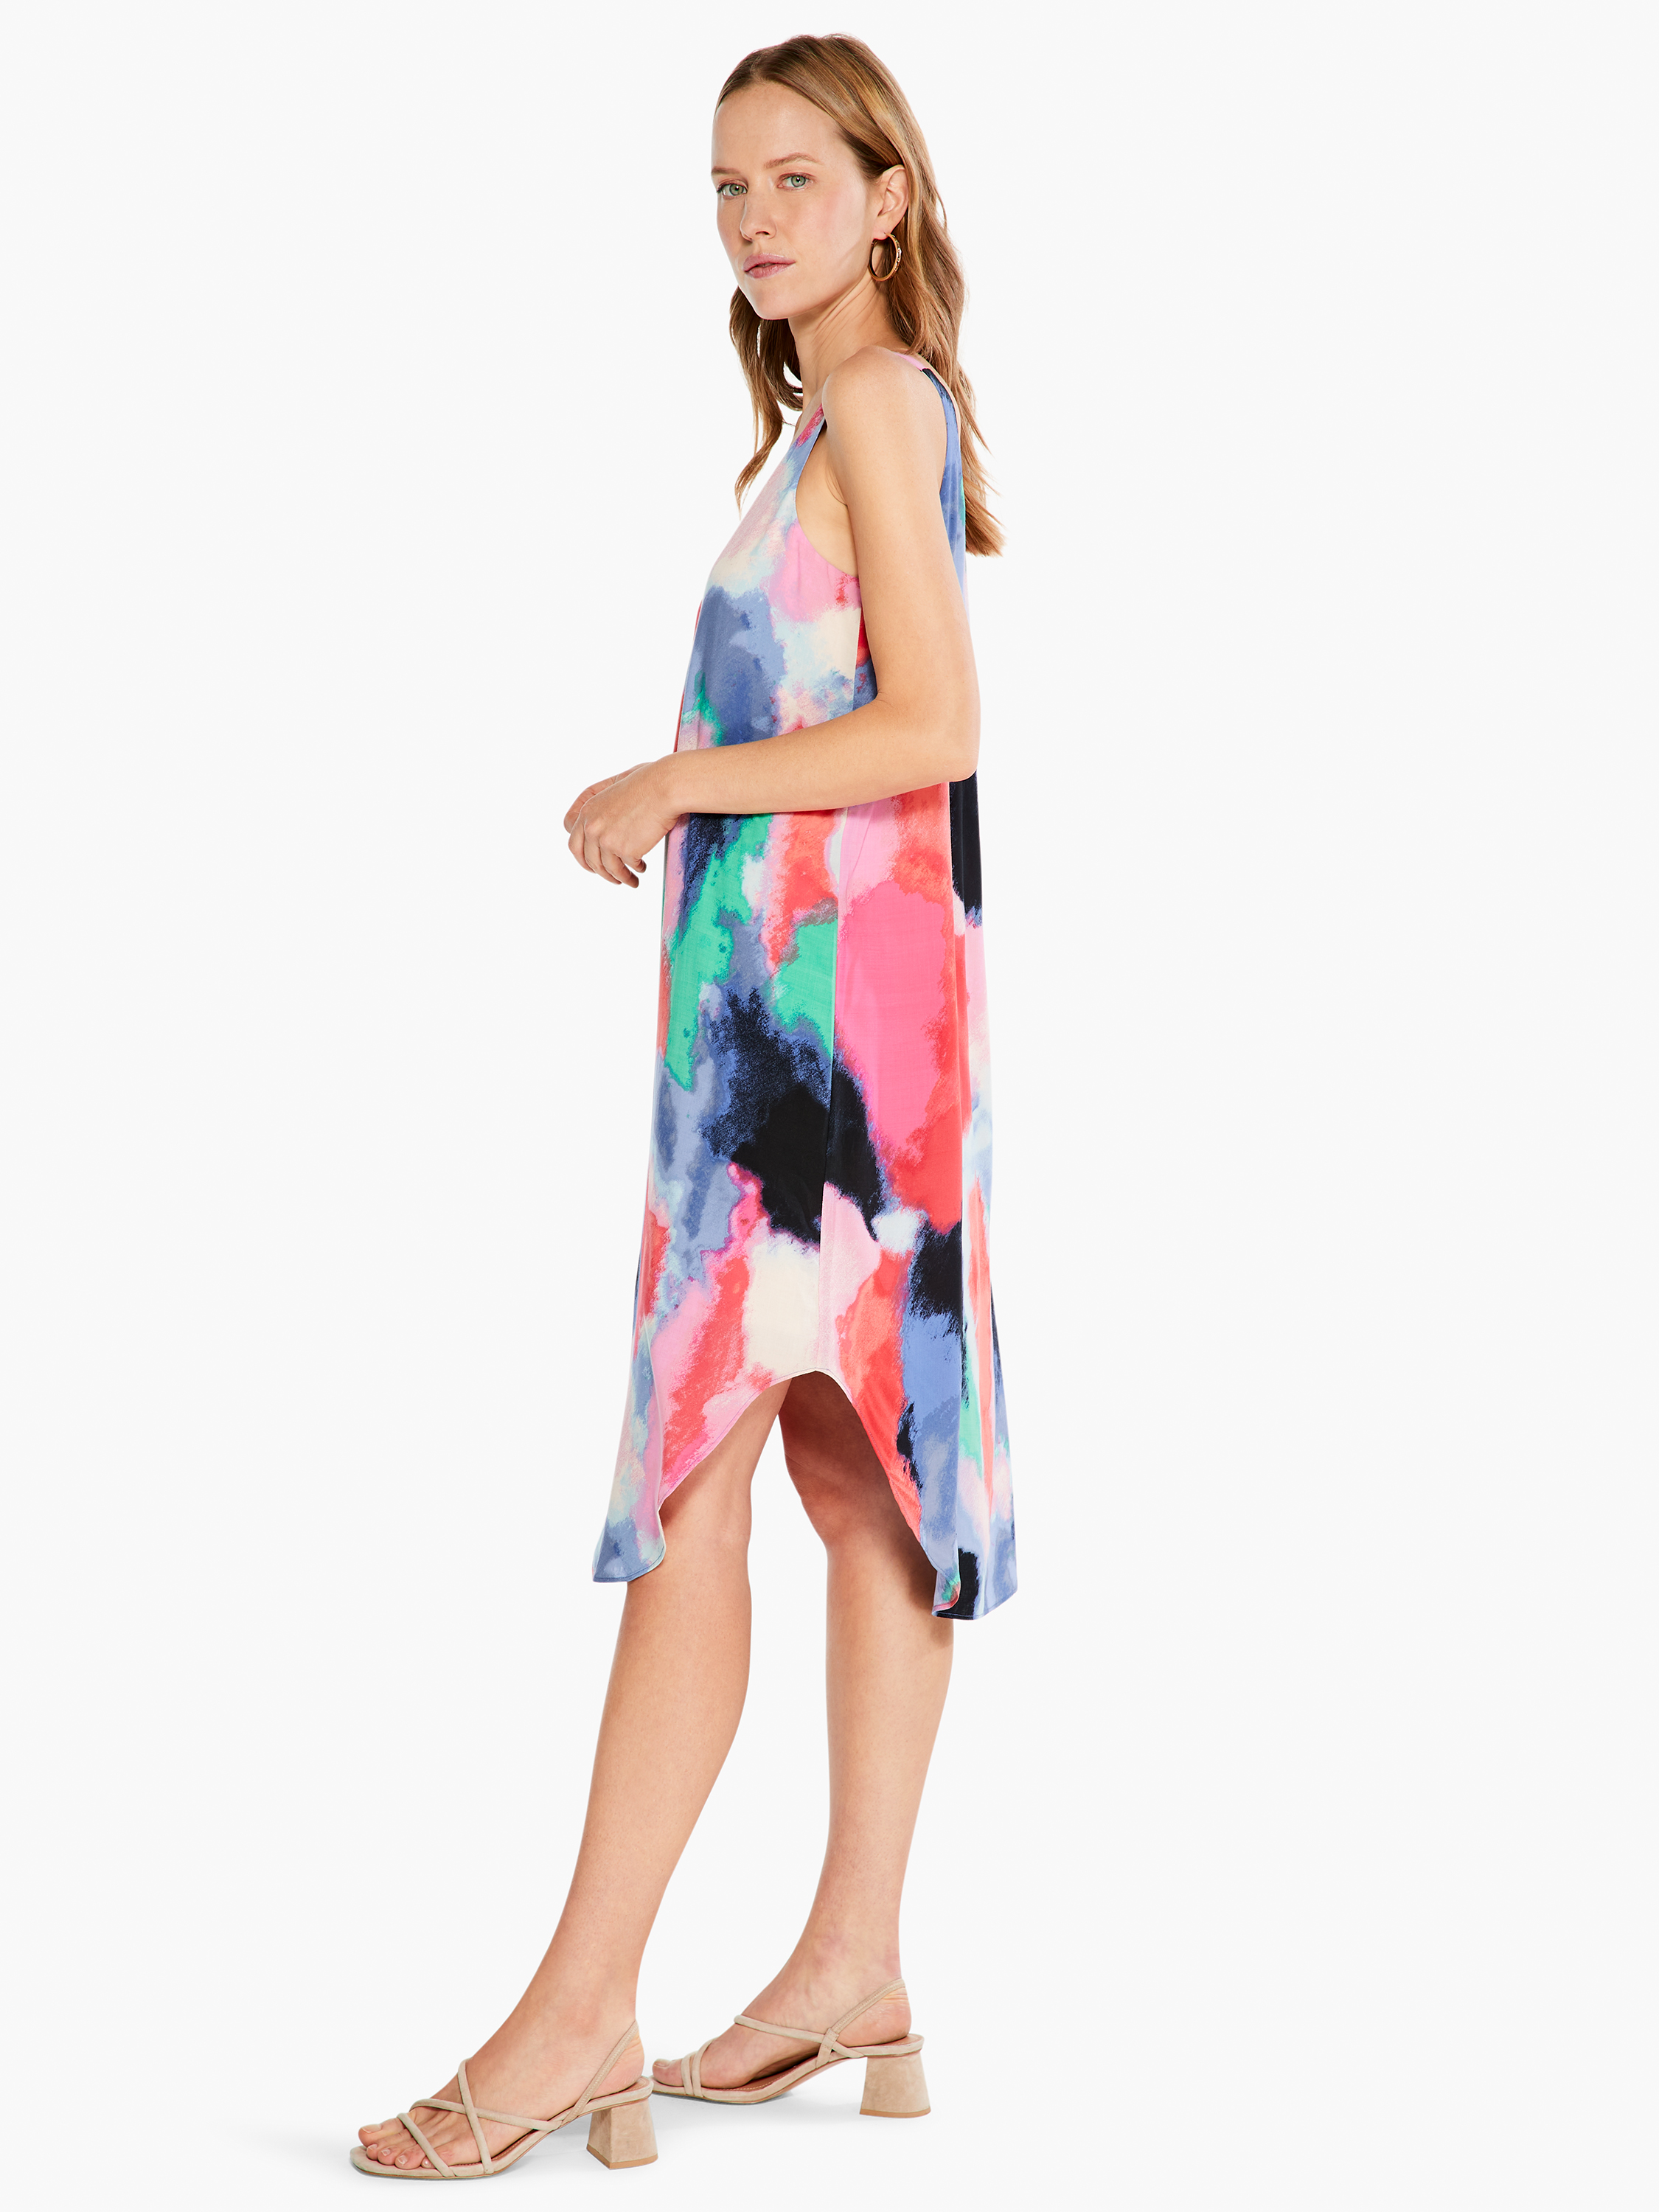 Adonia Abstract Jacquard Dress